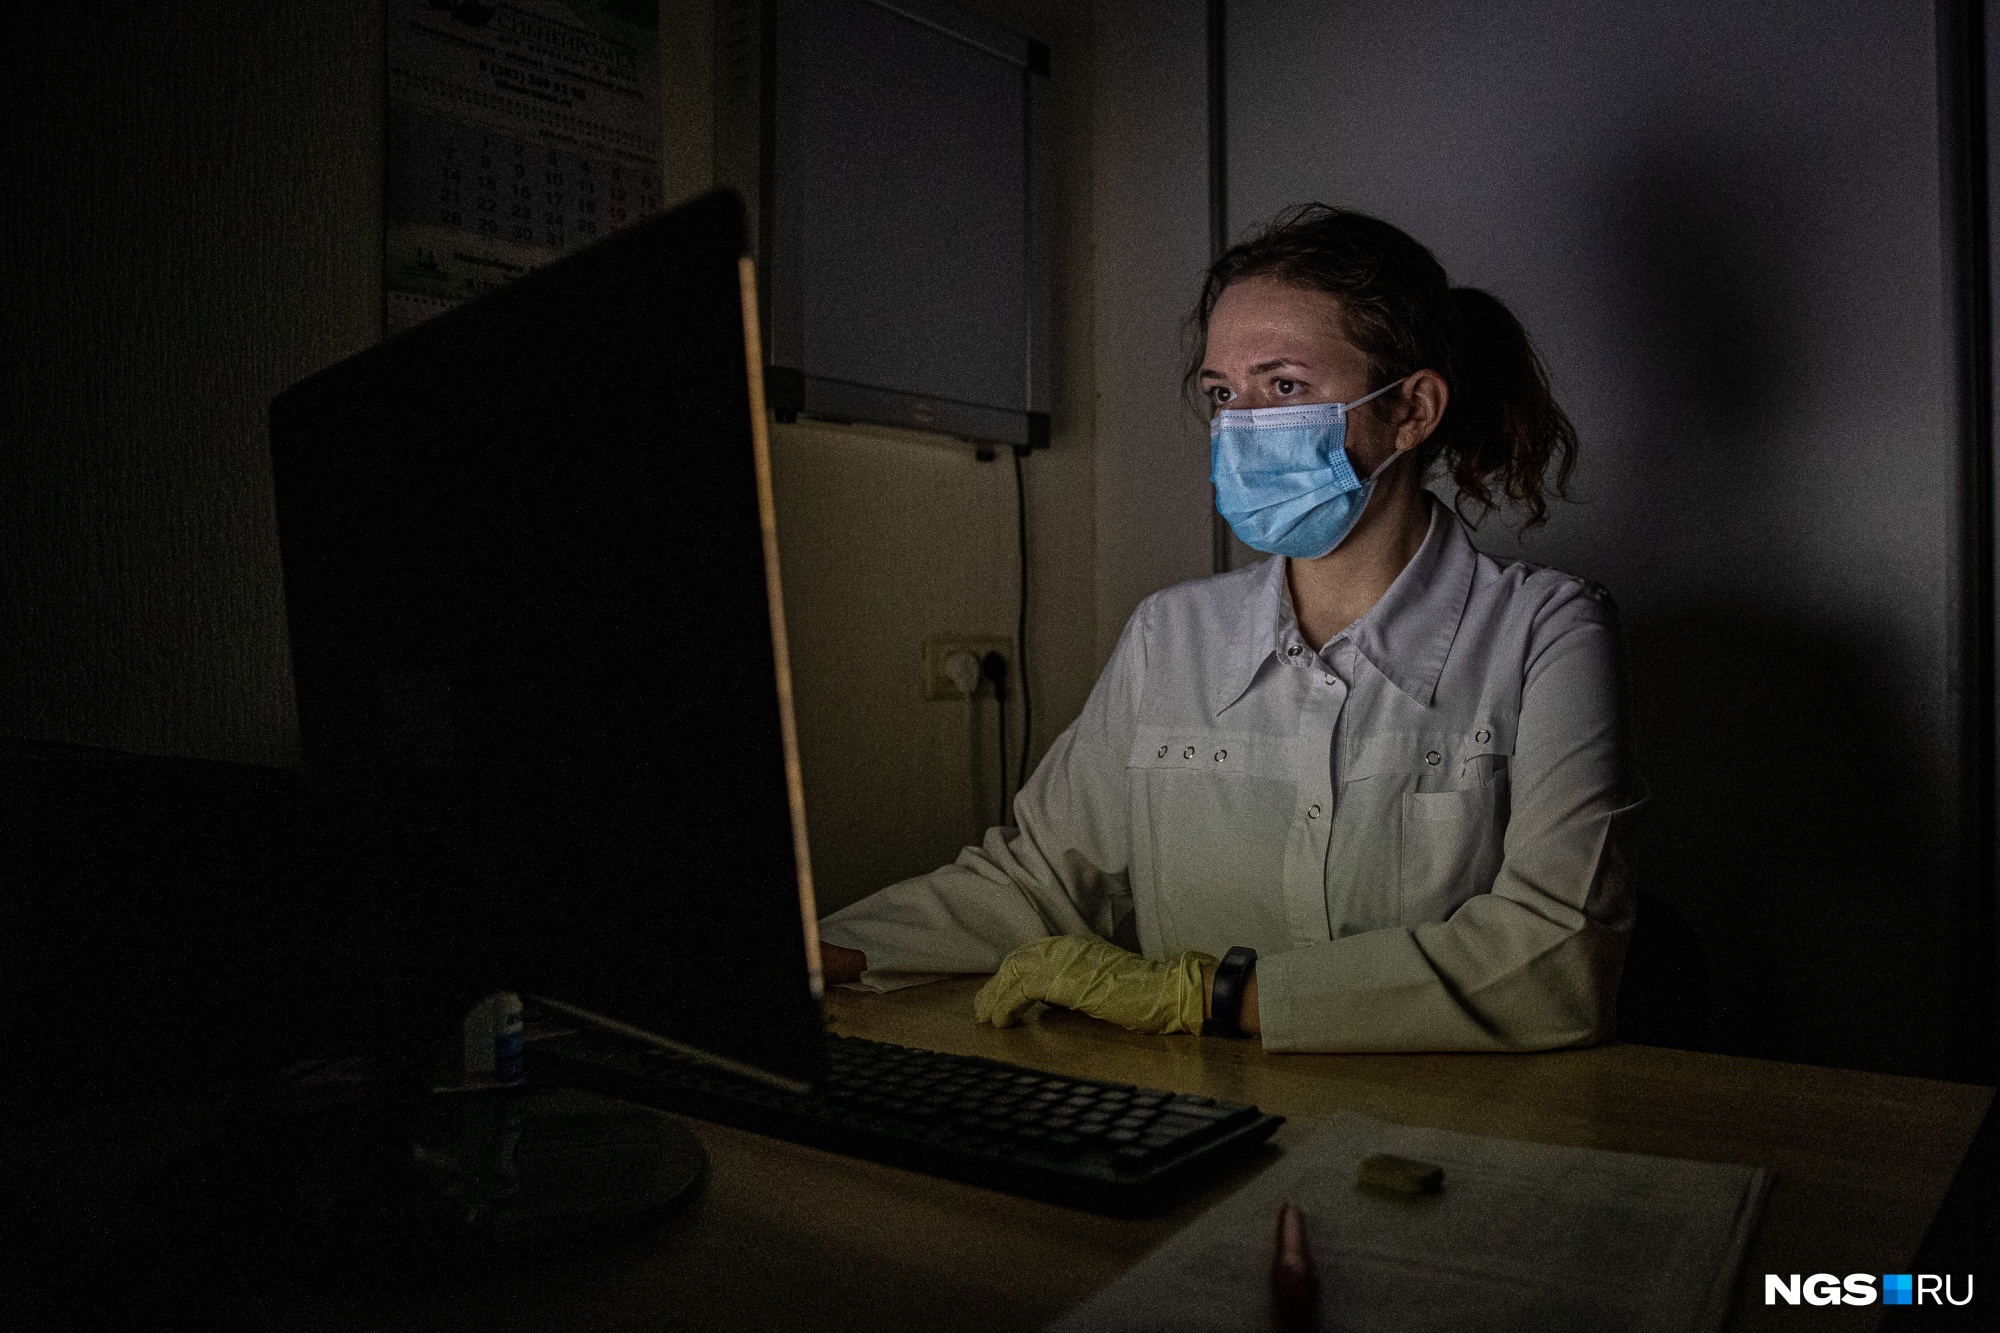 Сомнолог Ксения Доронина во время процедуры наблюдает за пациентом с помощью компьютера